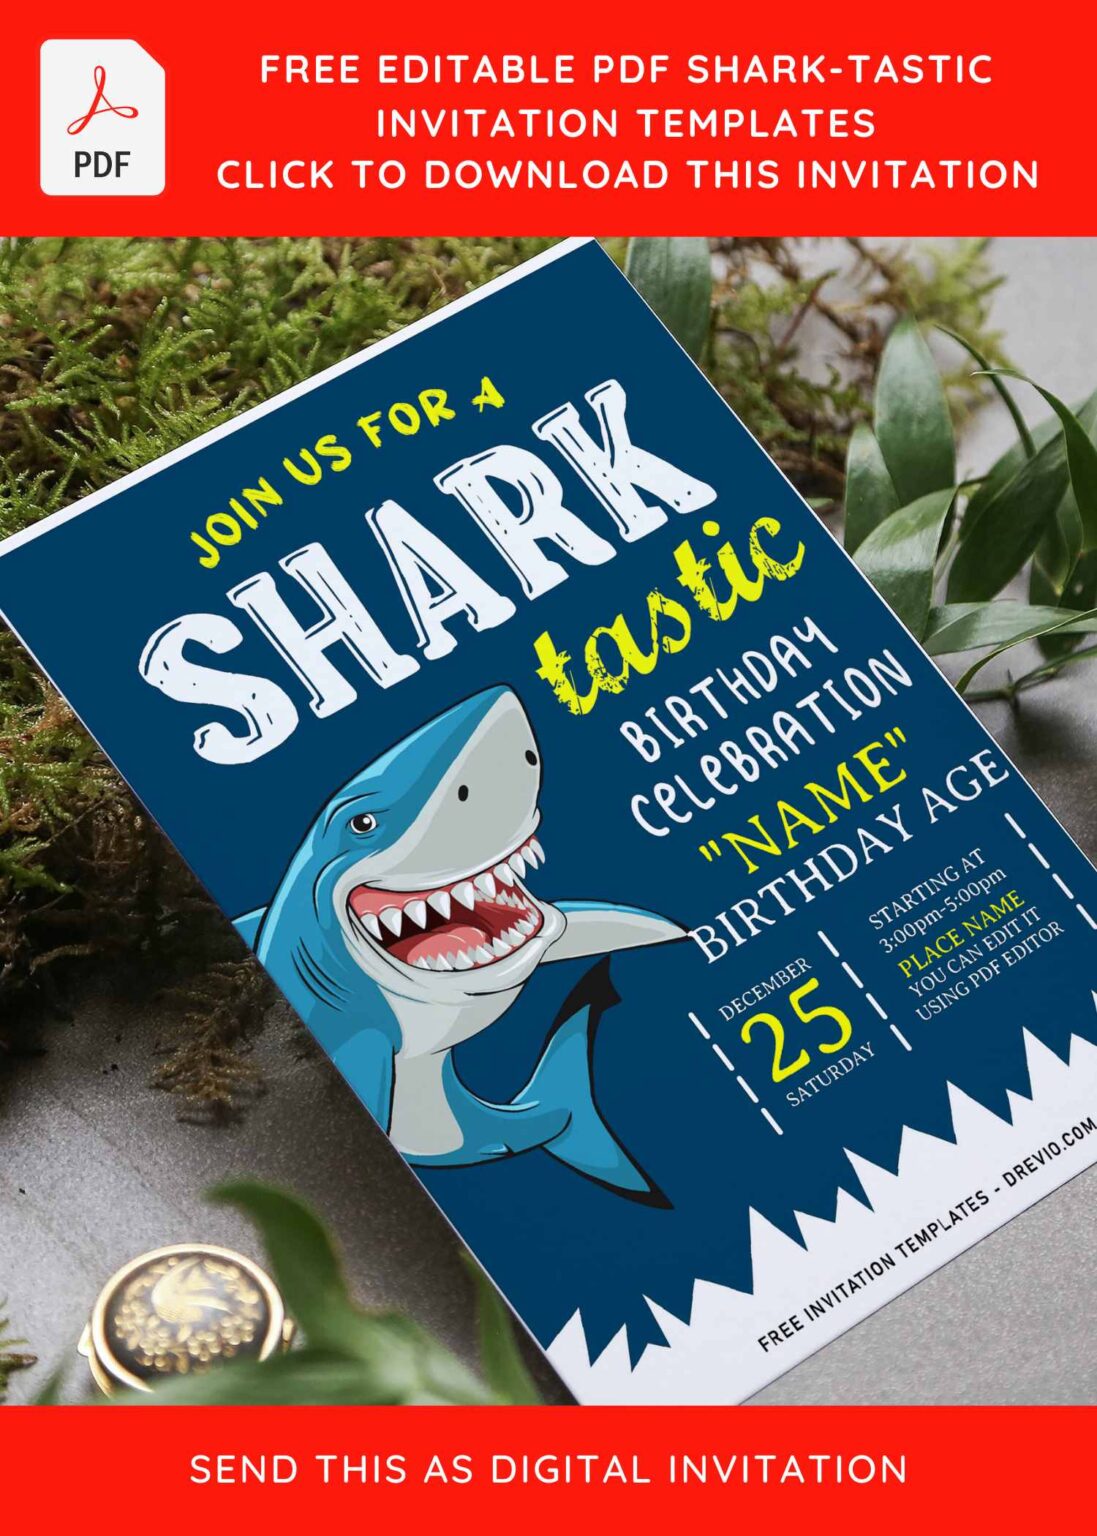 free-editable-pdf-cute-shark-tastic-birthday-invitation-templates